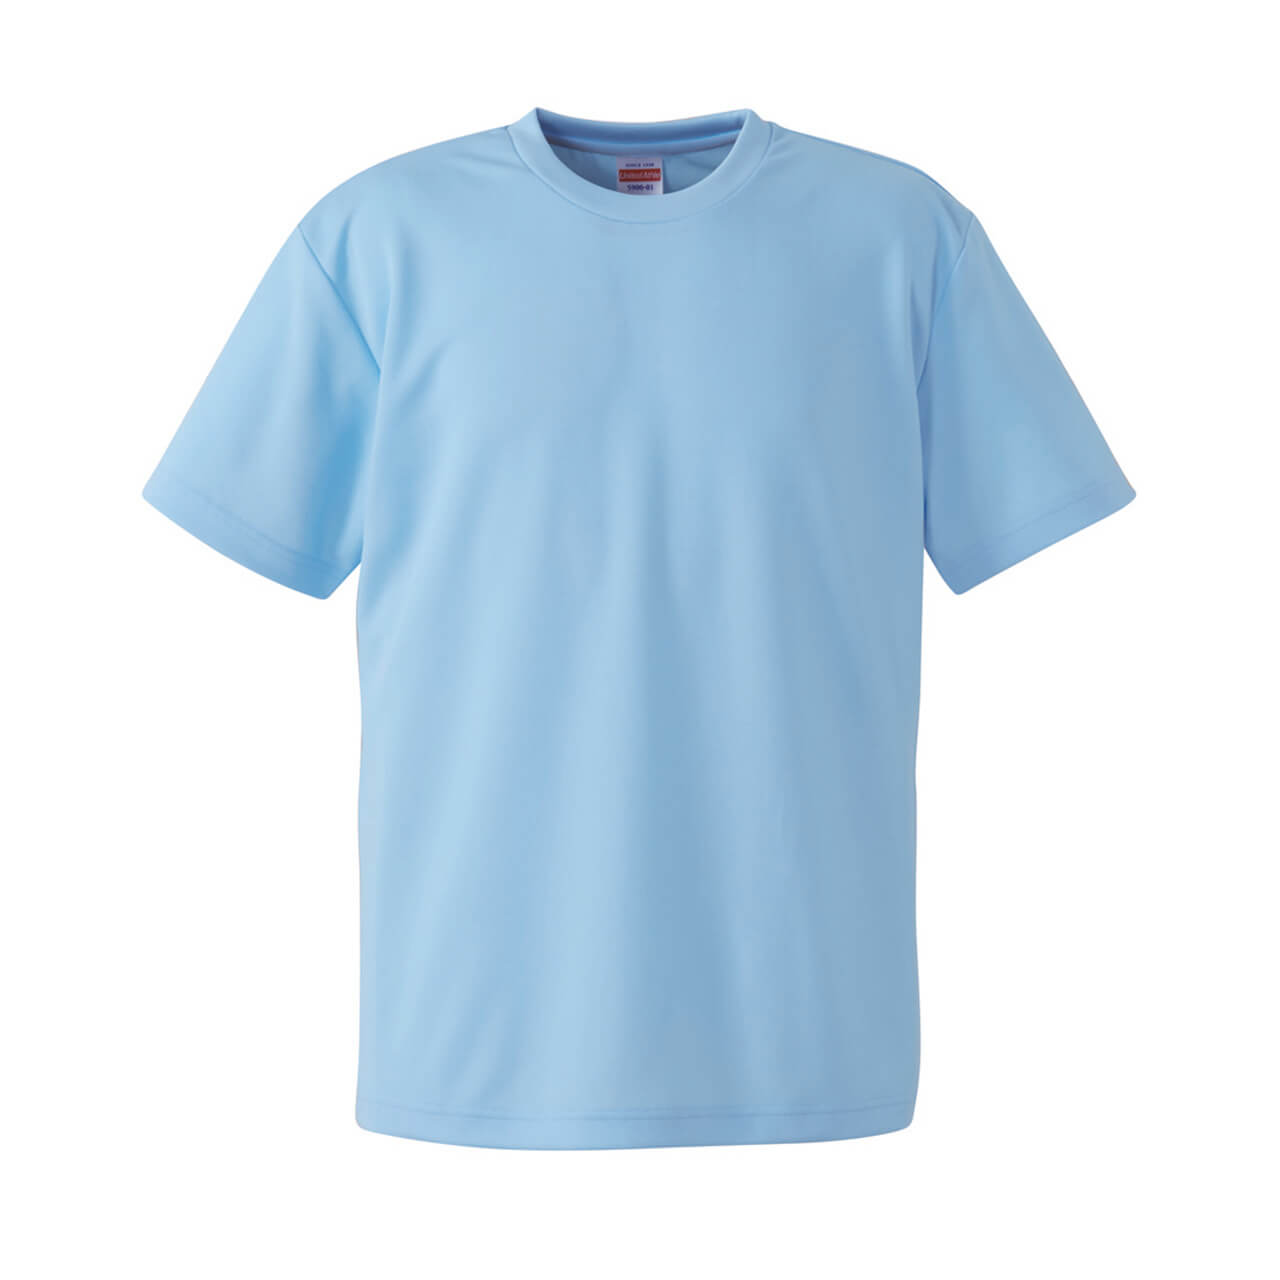 レディース 4.1オンス ドライアスレチックTシャツ S～XL (United Athle レディース アウター シャツ カラー) (取寄せ)